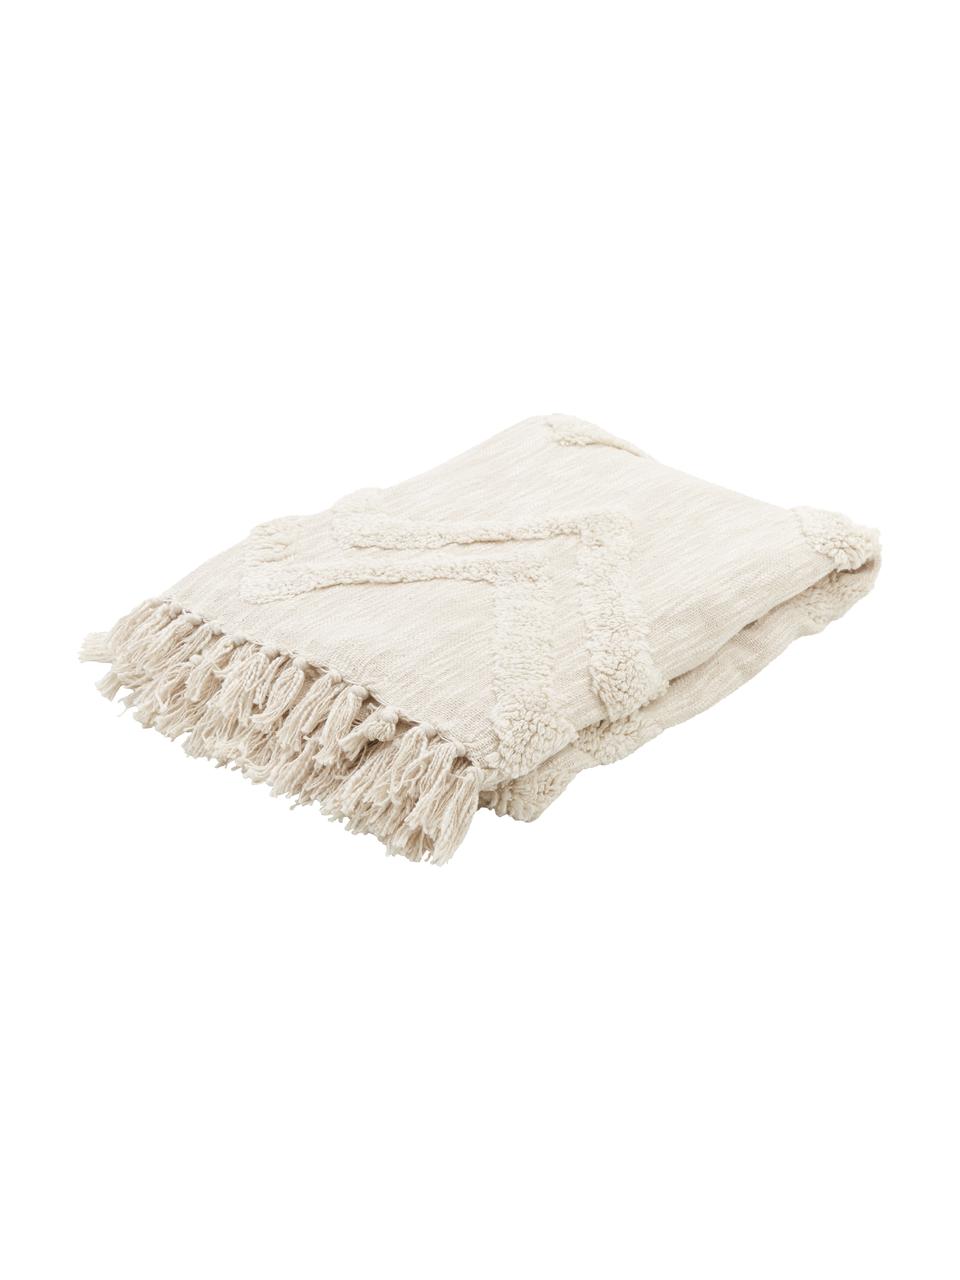 Baumwolldecke Akesha mit getuftetem Zickzack-Muster, 100% Baumwolle, Cremeweiß, B 130 x L 170 cm